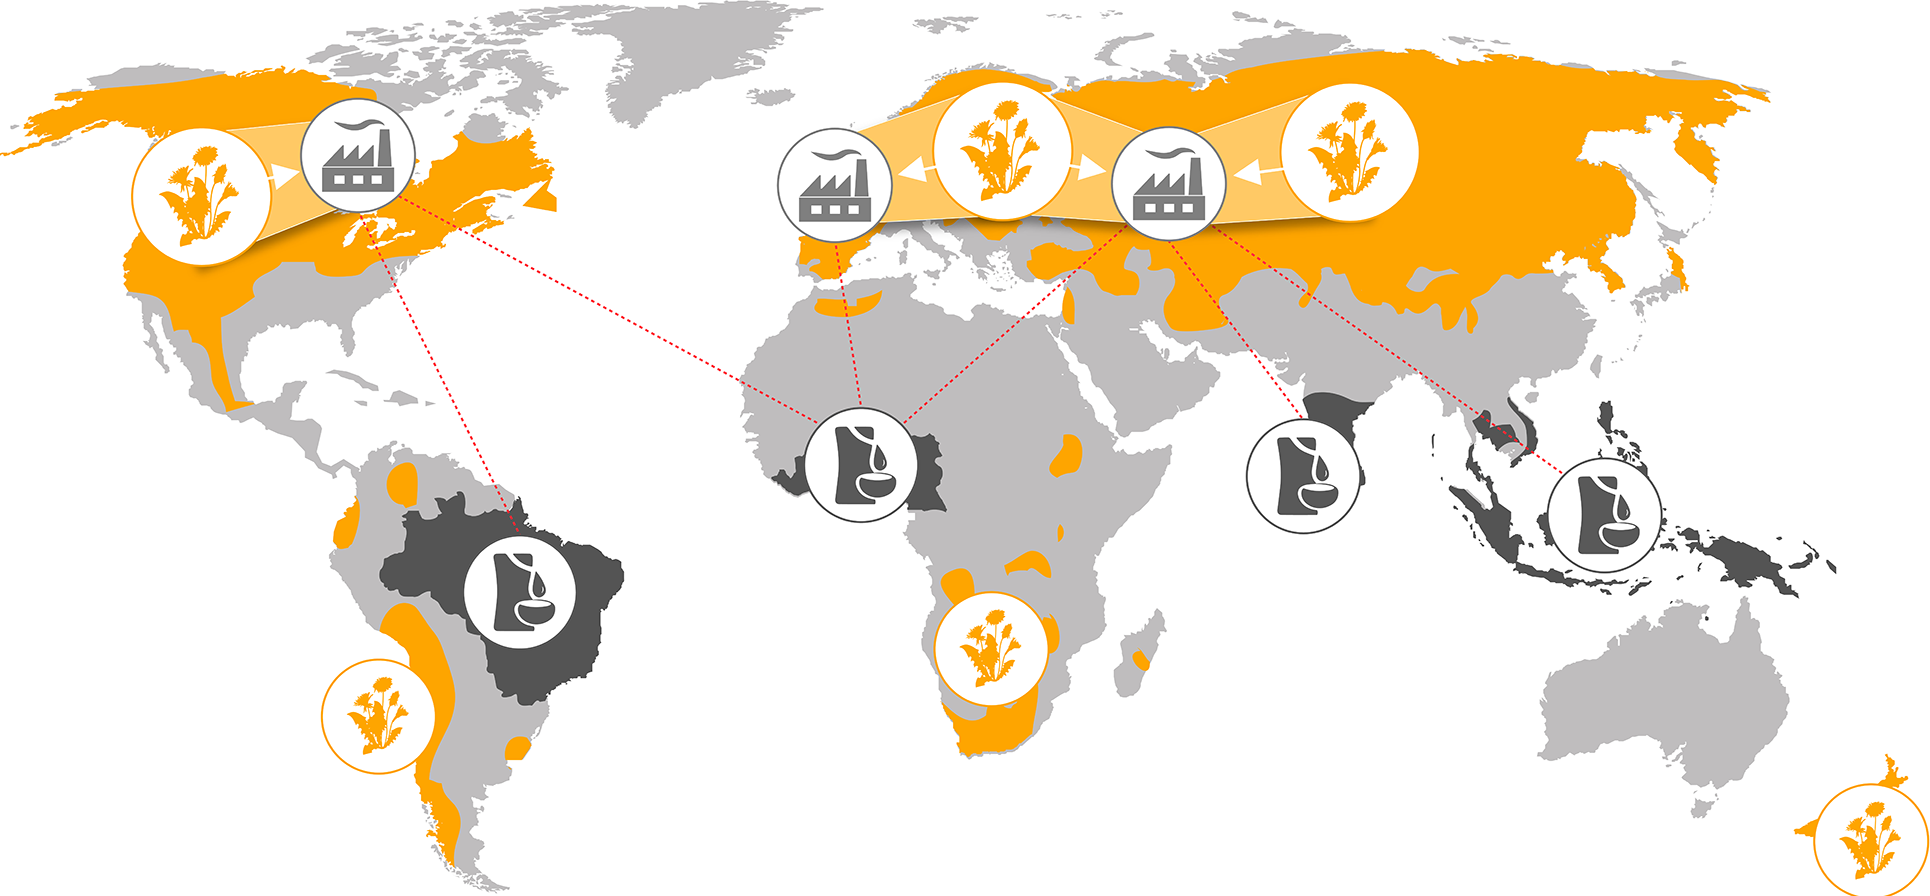 (imagem de mapa global com indicações dos locais onde existe coleta de material de seringueiras, dente de leão e fábricas)